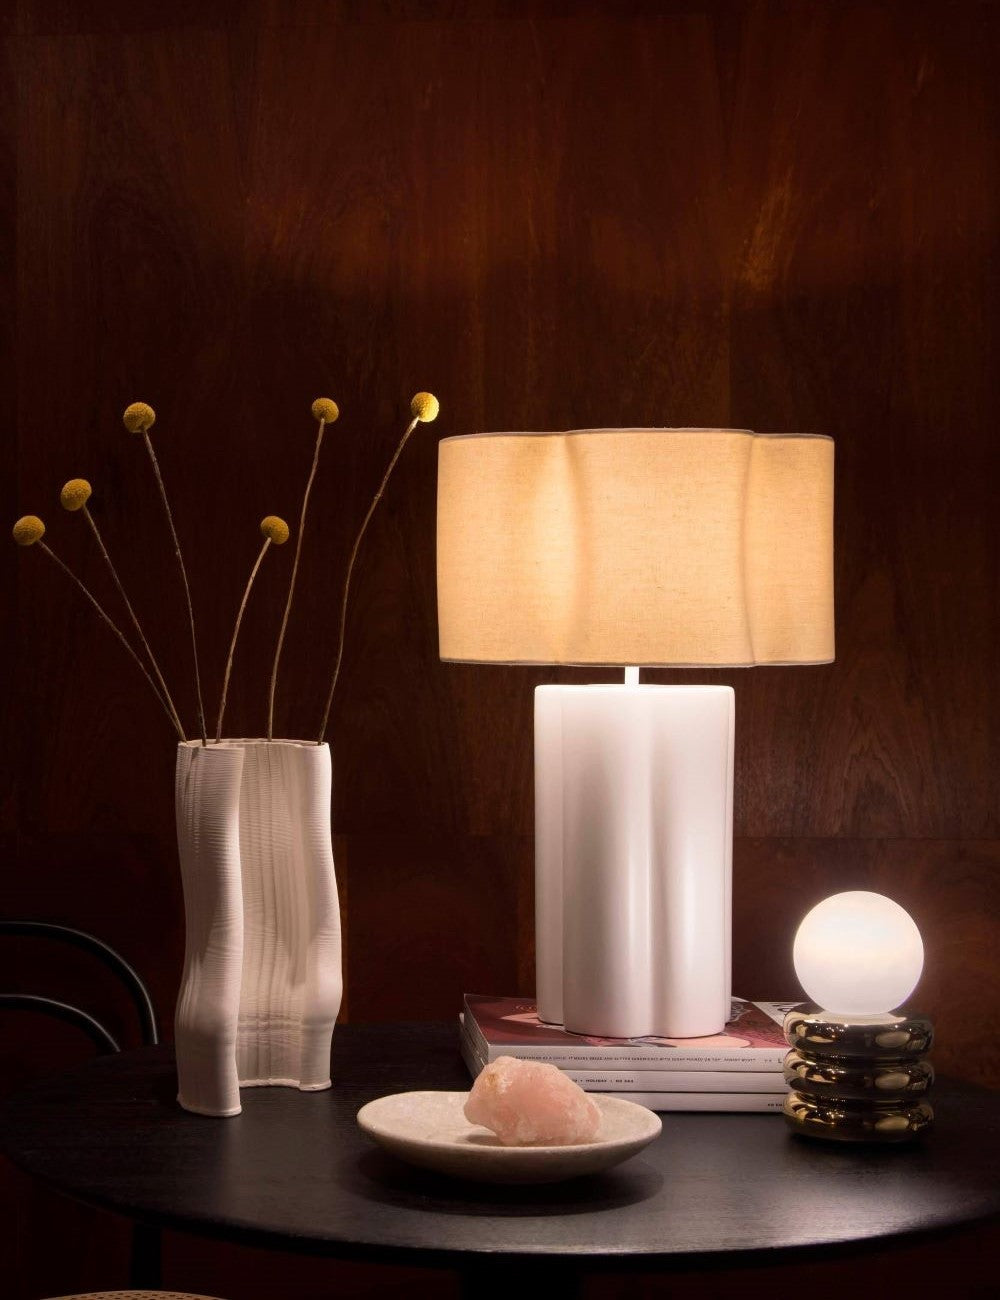 Houseof Flower Ceramic Table Lamp White